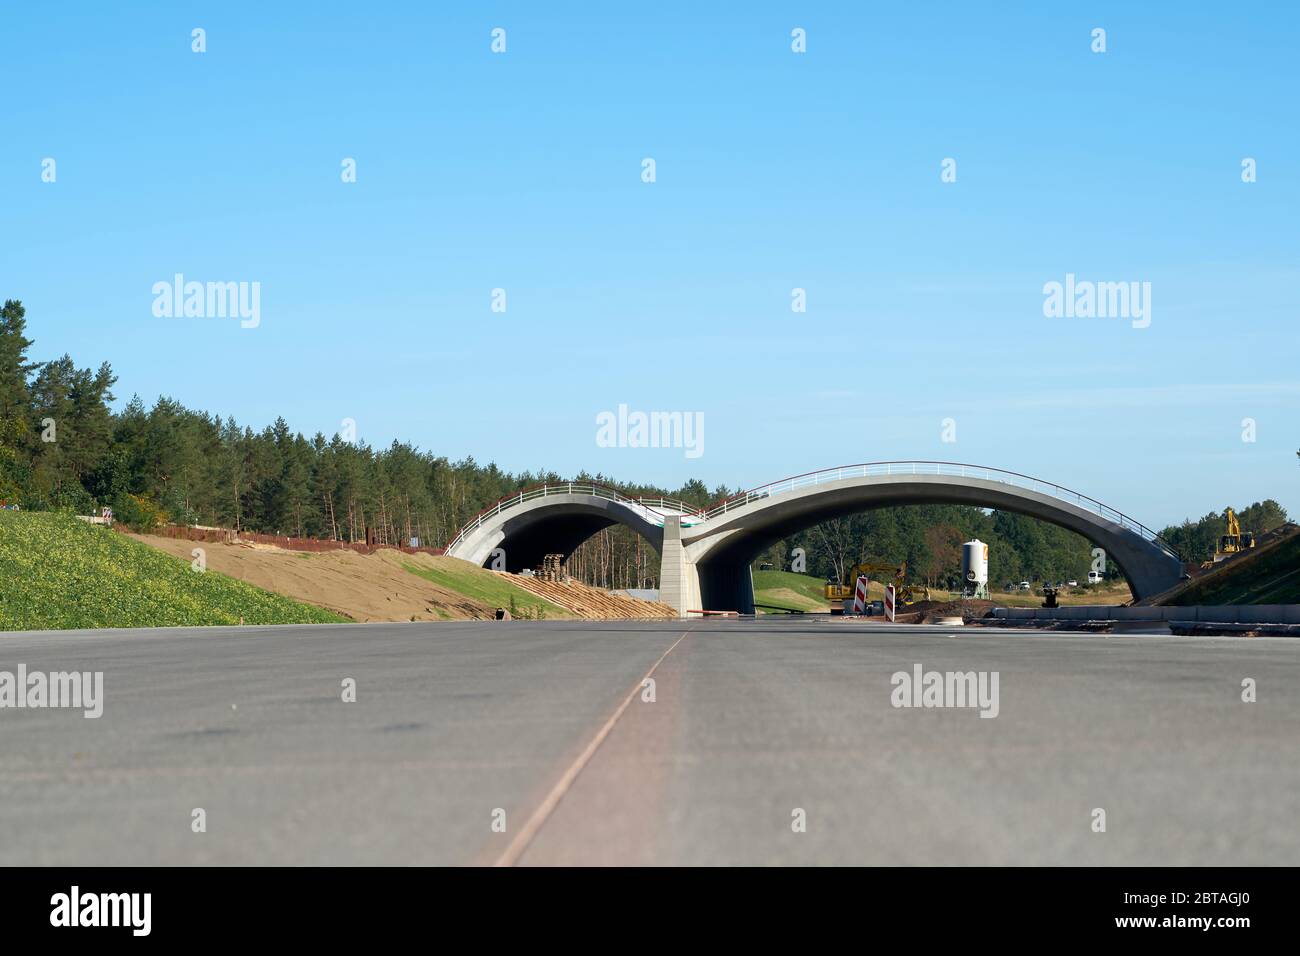 Bau der Autobahn A14 mit einer grünen Brücke für Tiere nördlich des Dorfes Dolle Stockfoto